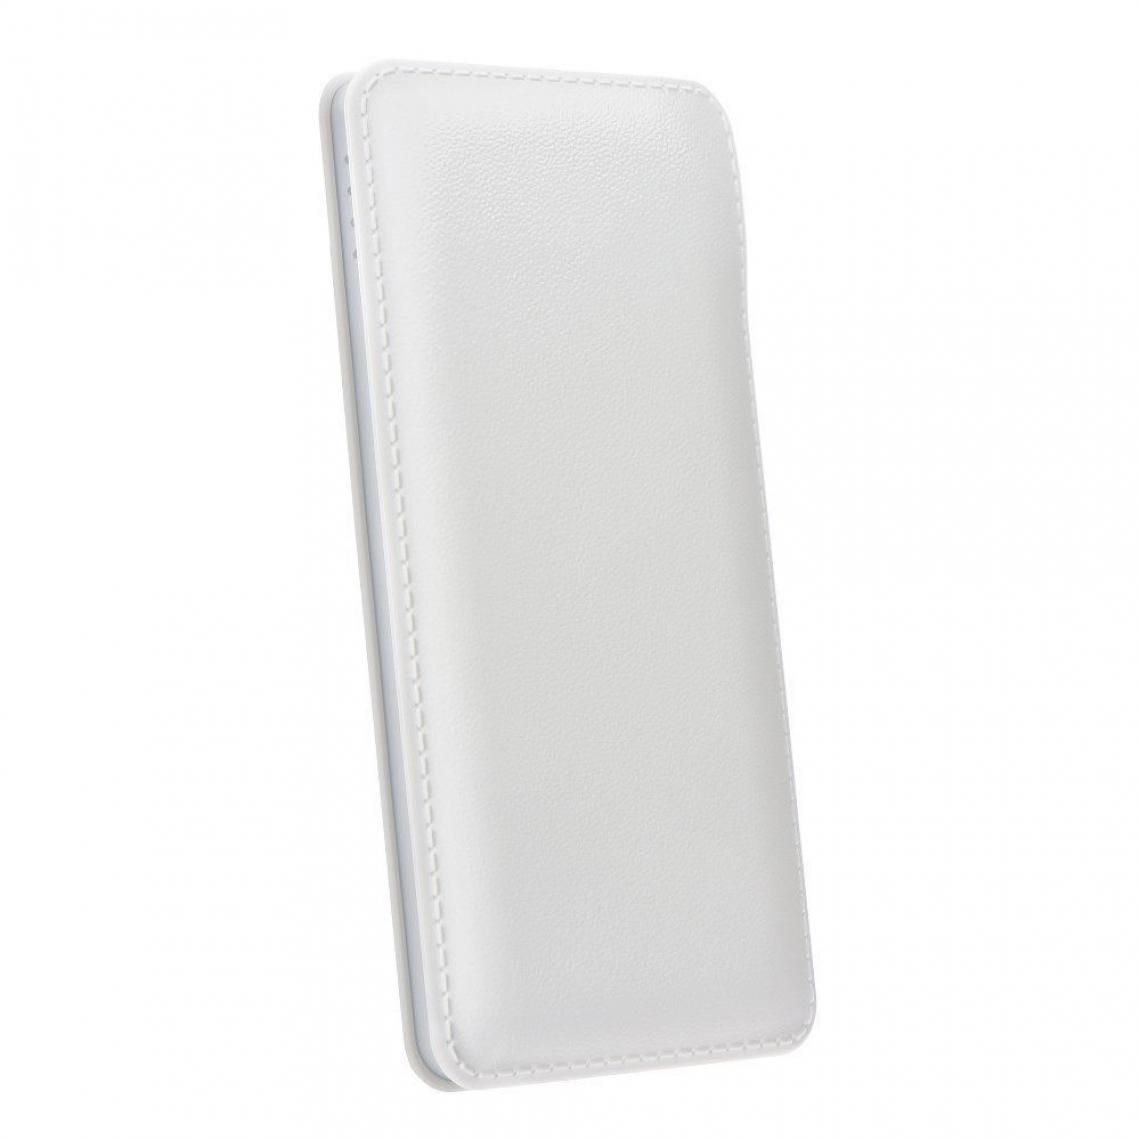 Ozzzo - Chargeur batterie externe 30000 mAh powerbank ozzzo blanc pour Infinix S5 - Autres accessoires smartphone